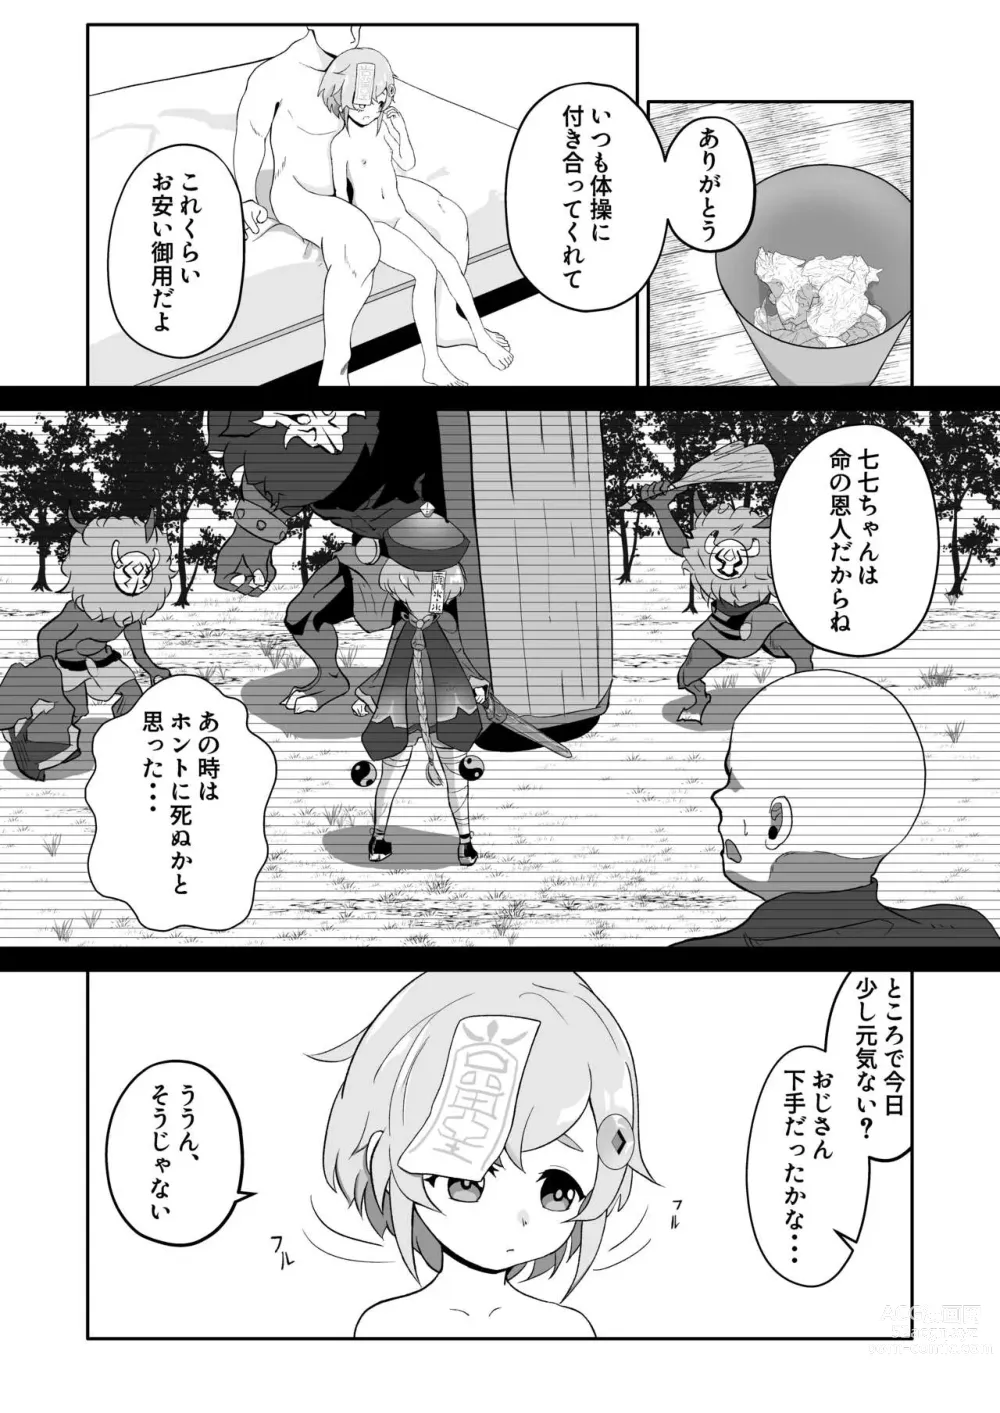 Page 3 of doujinshi YawaQi Taisou